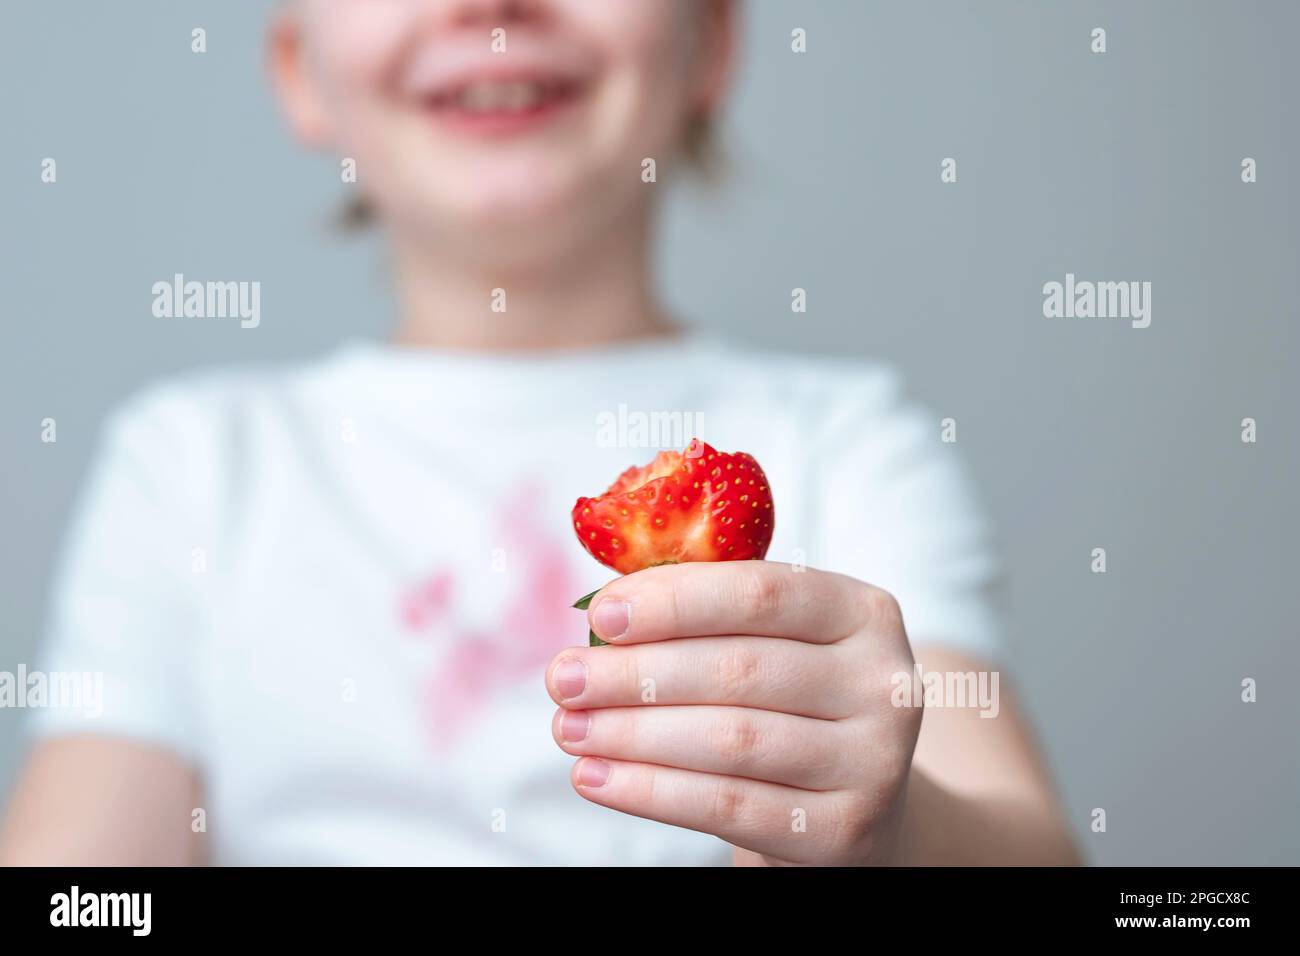 Die Hand eines Kindes hält ein Stück Erdbeere in der Hand. Ein schmutziger roter Fleck auf der Vorderseite eines weißen T-Shirts Stockfoto